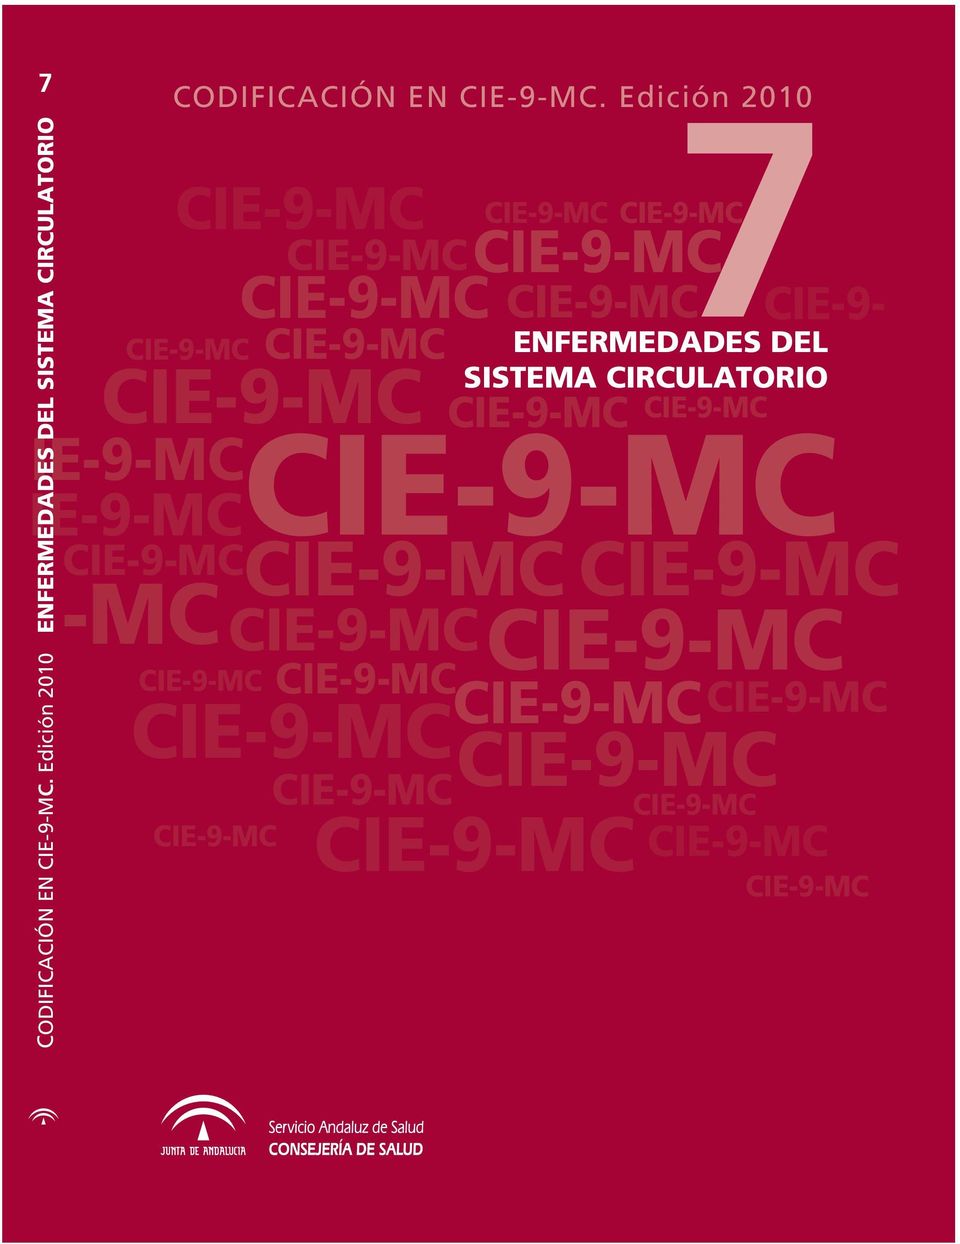 SISTEMA CIRCULATORIO IE-9-MC IE-9-MC CODIFICACIÓN EN CIE-9-MC.